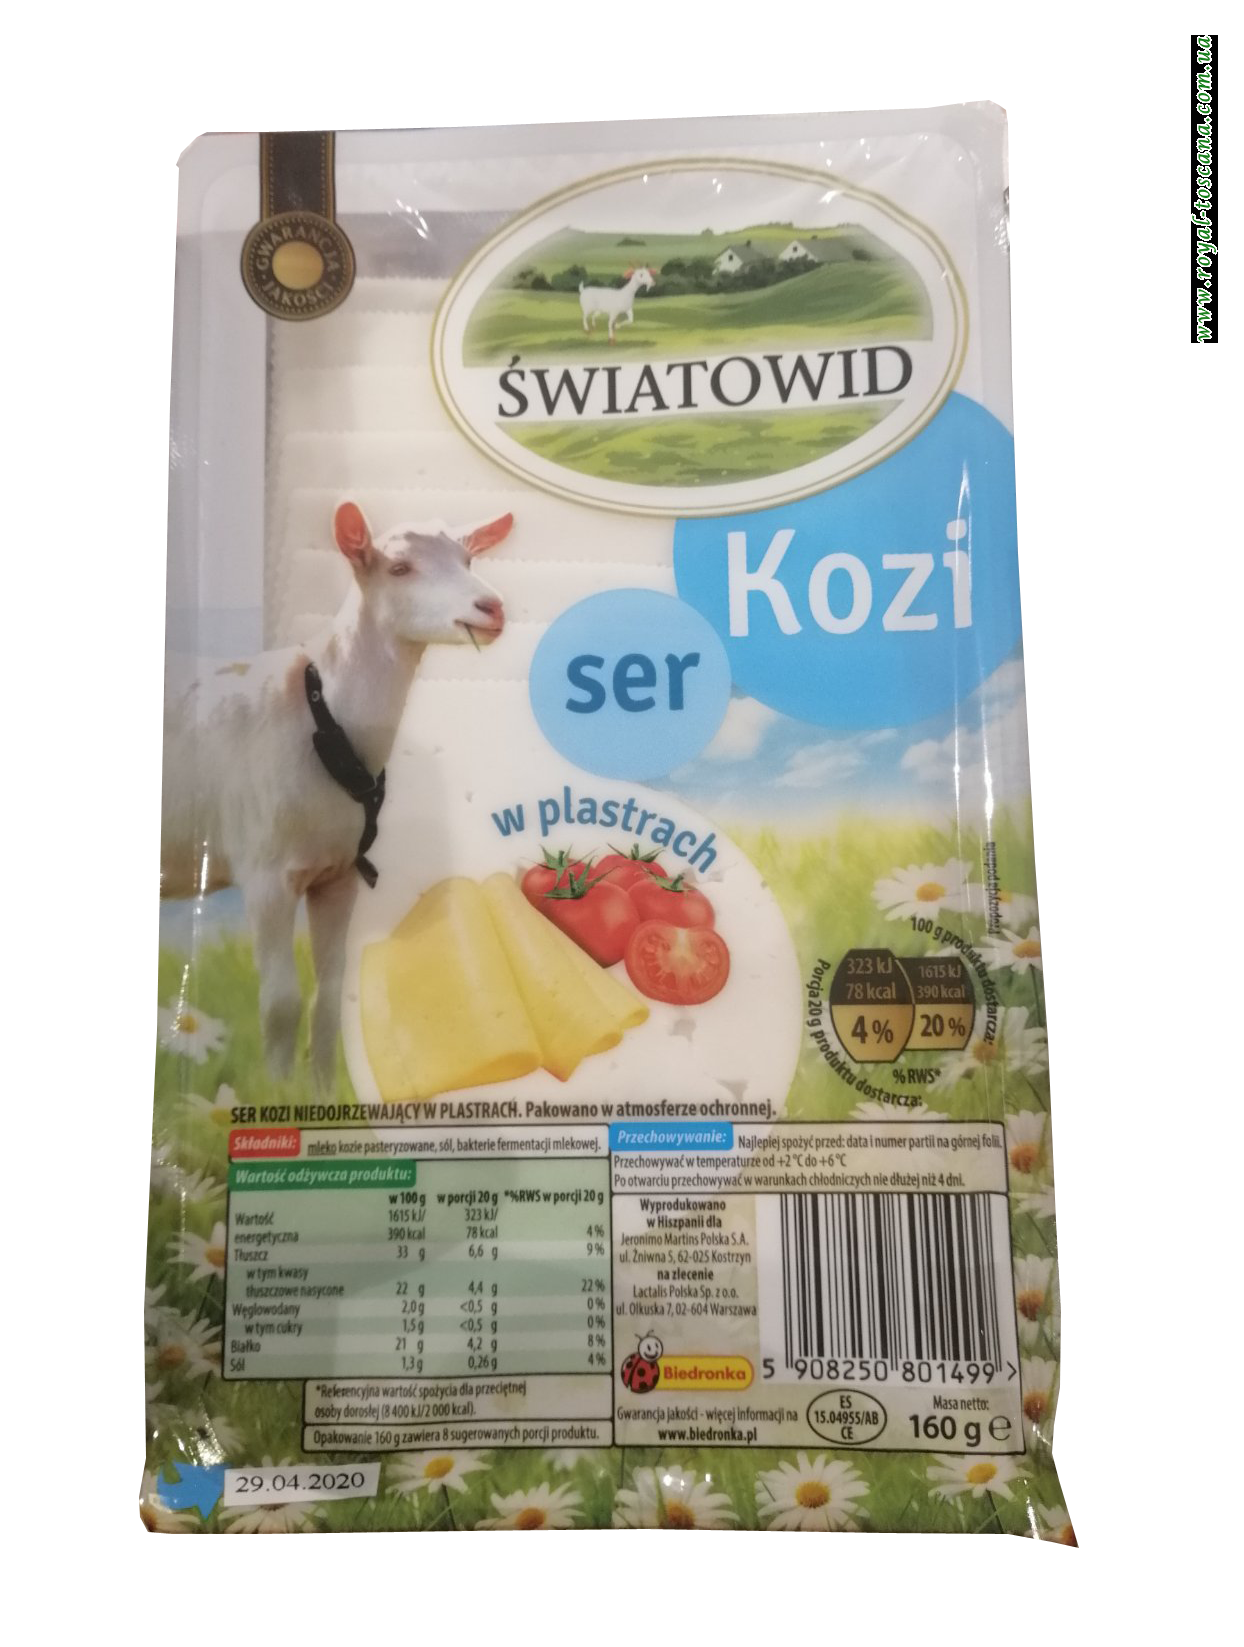 Сыр Swiatowid Kozi, 160г